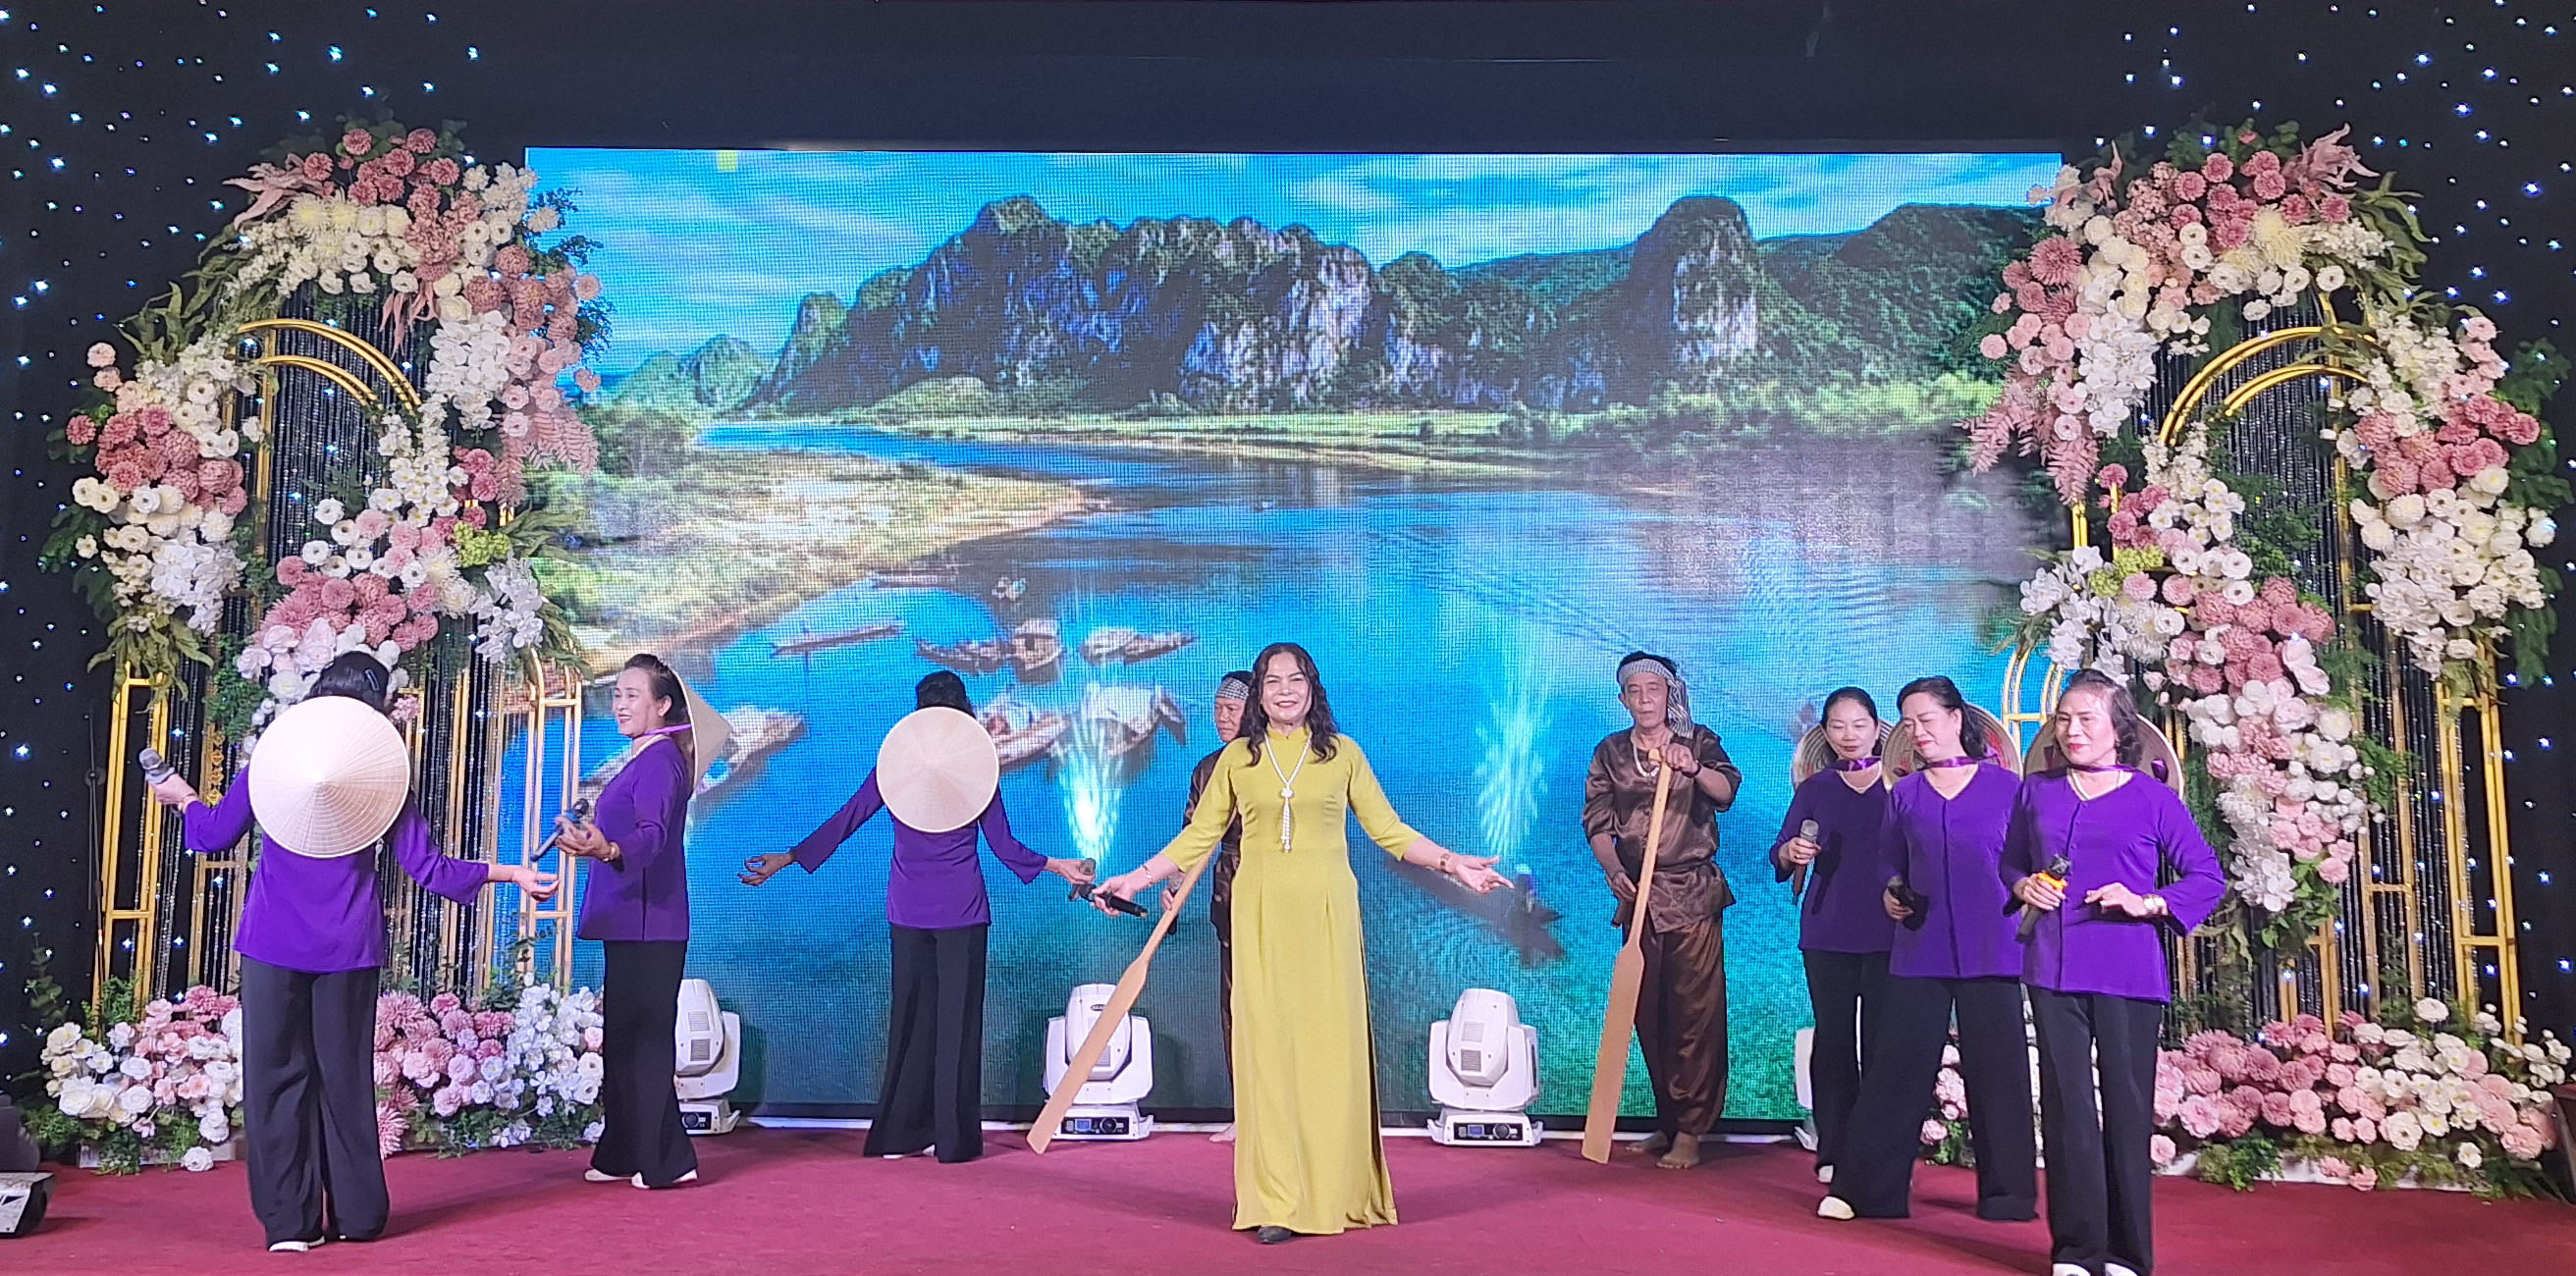 Ca khúc: Quảng Bình quê ta ơi. Biểu diễn CLV văn nghệ Trường Sơn sư đoàn 470 huyện Bố Trạch.